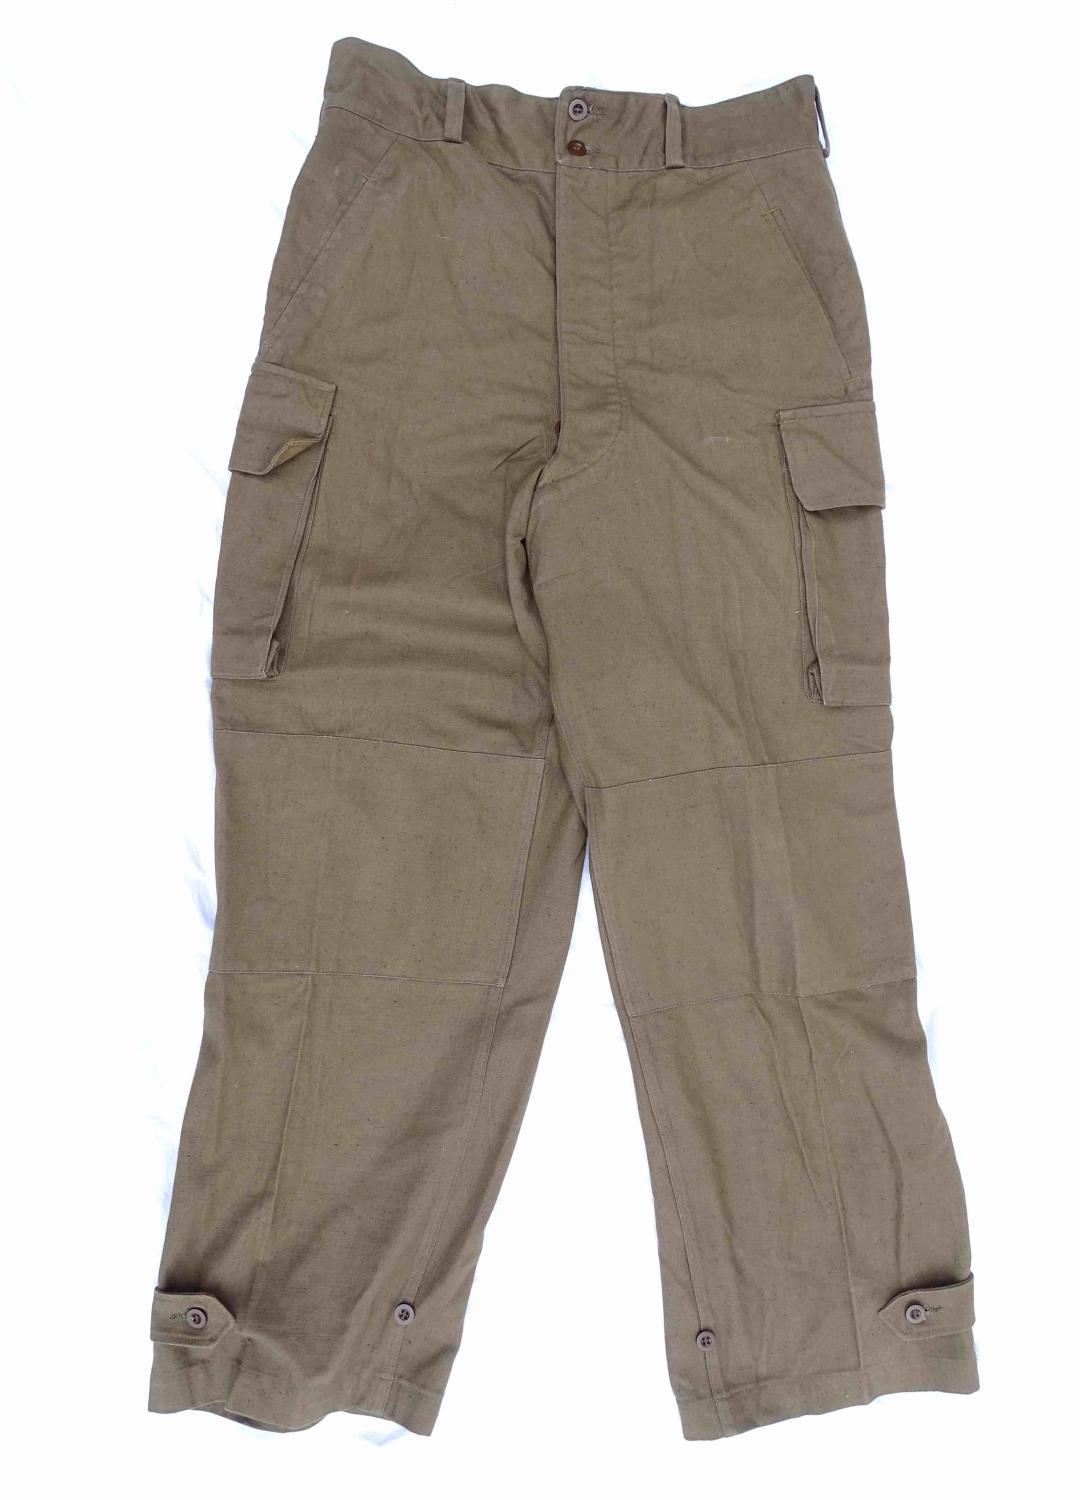 Pantalon TTA 1947/54  Guerre d&#039;Alg&eacute;rie Taille 35. Etat neuf.